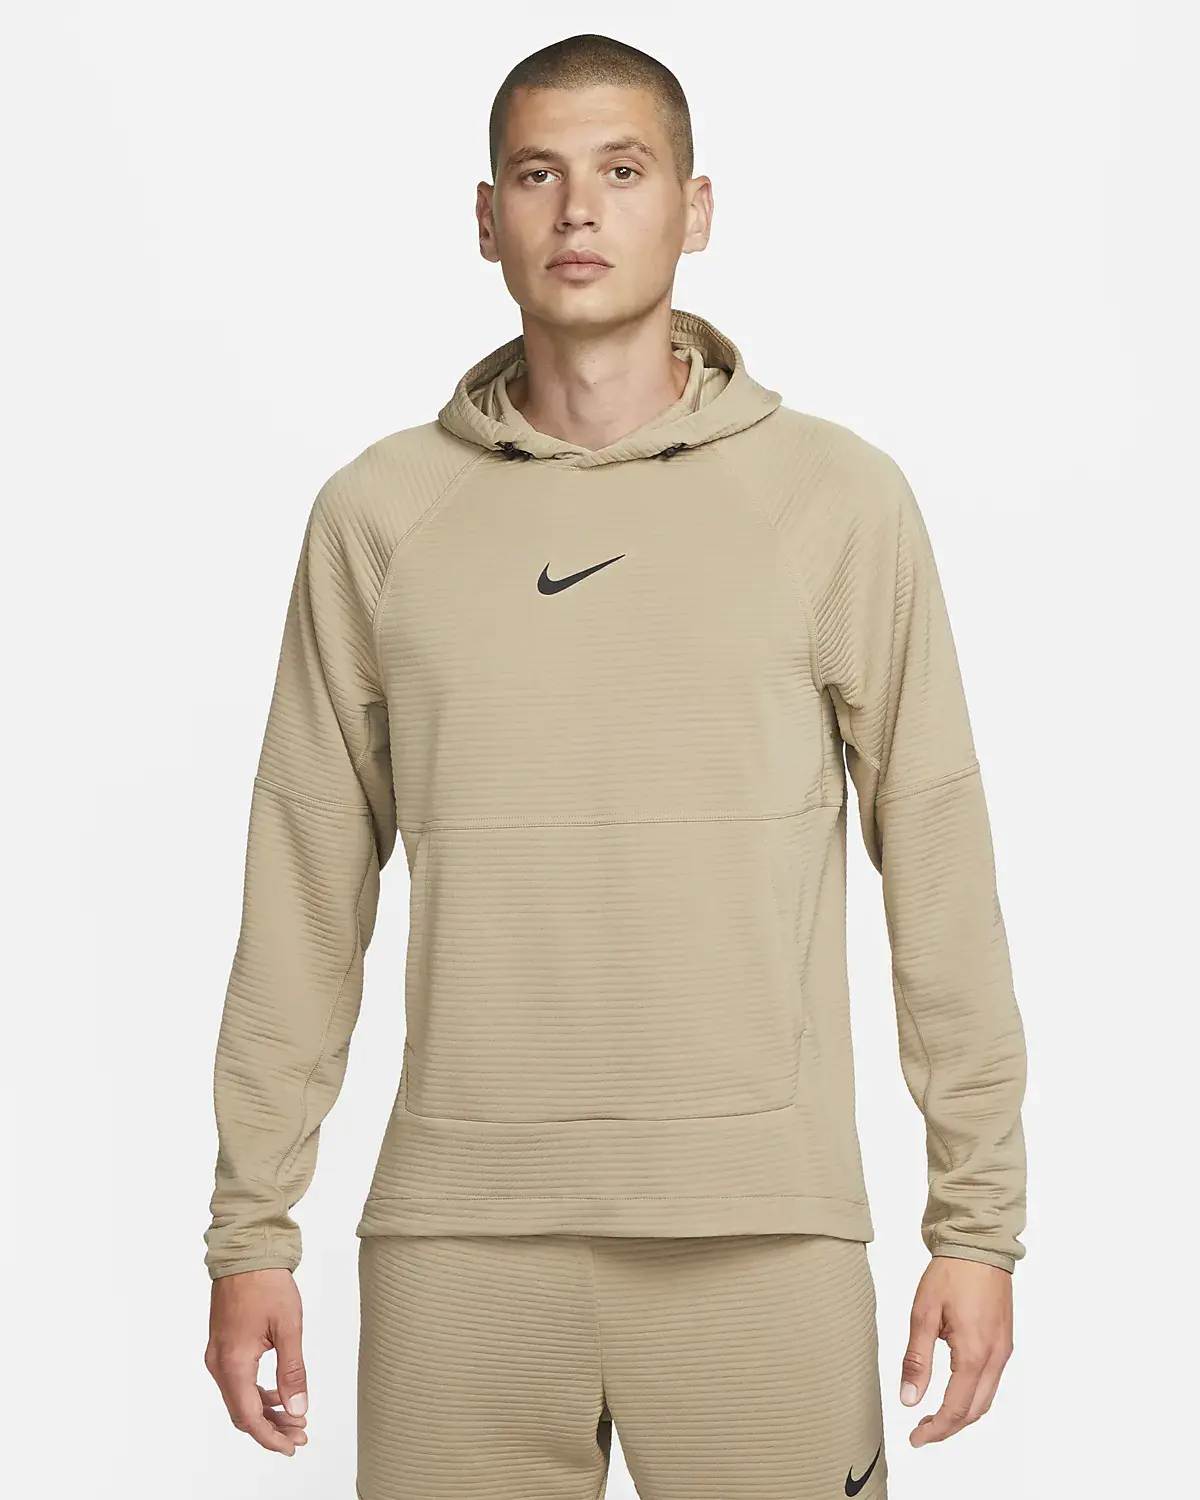 Nike SweatShirts. 1